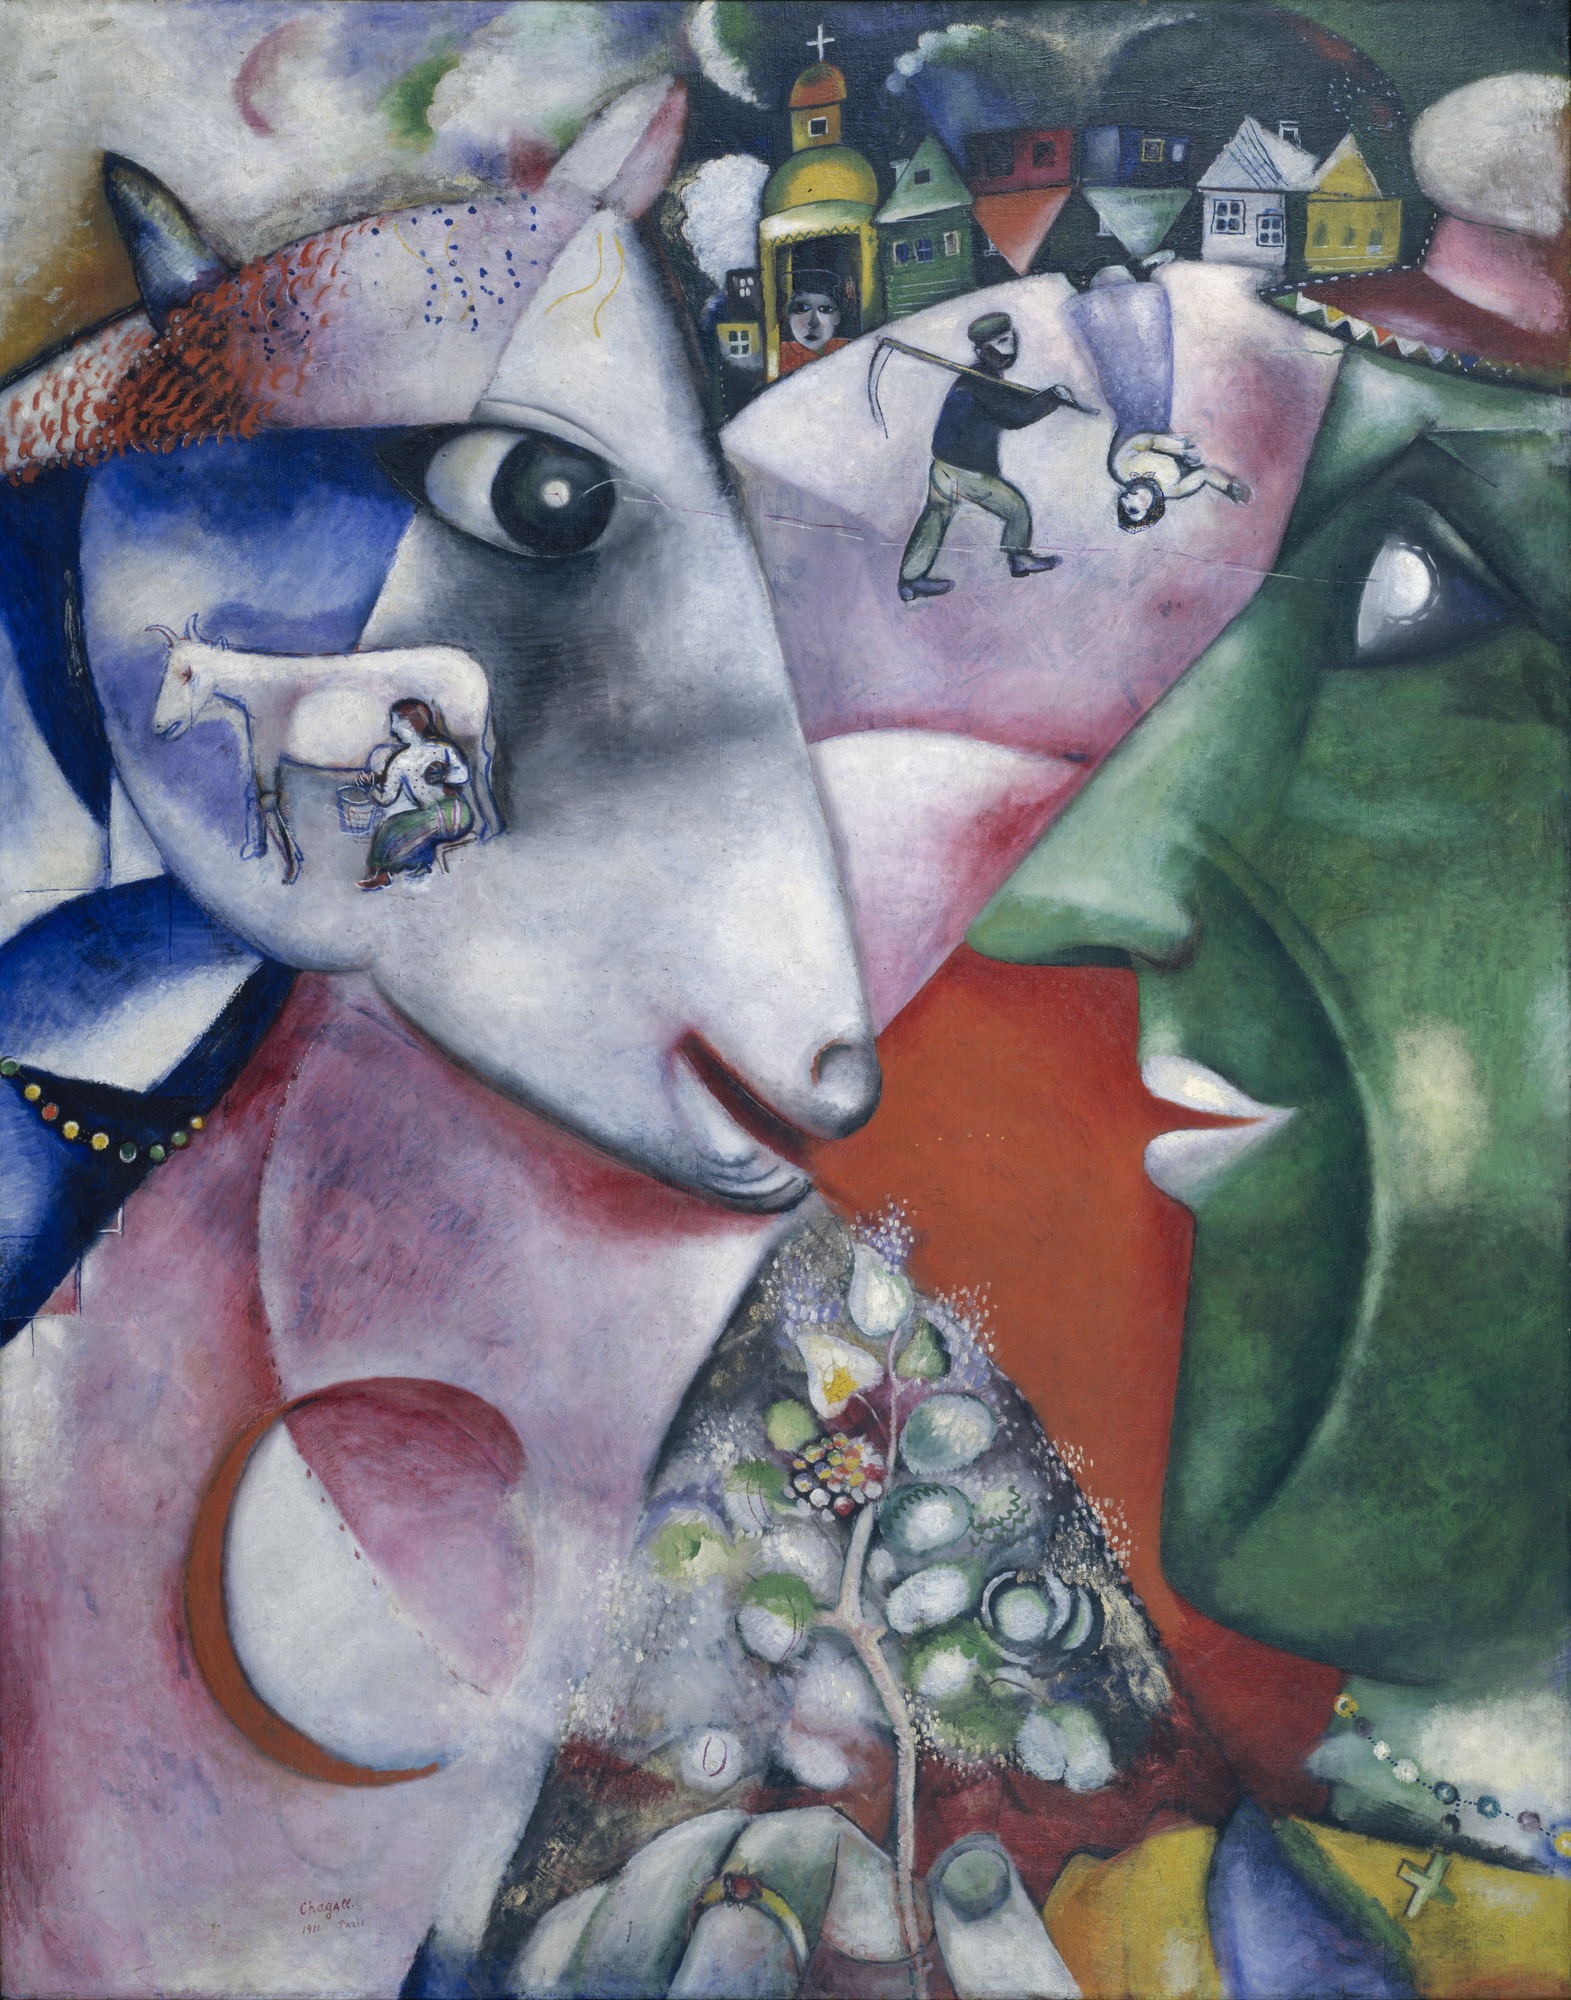 Ben ve Köy by Marc Chagall - 1911 - 191 x 150.5 cm Museum of Modern Art